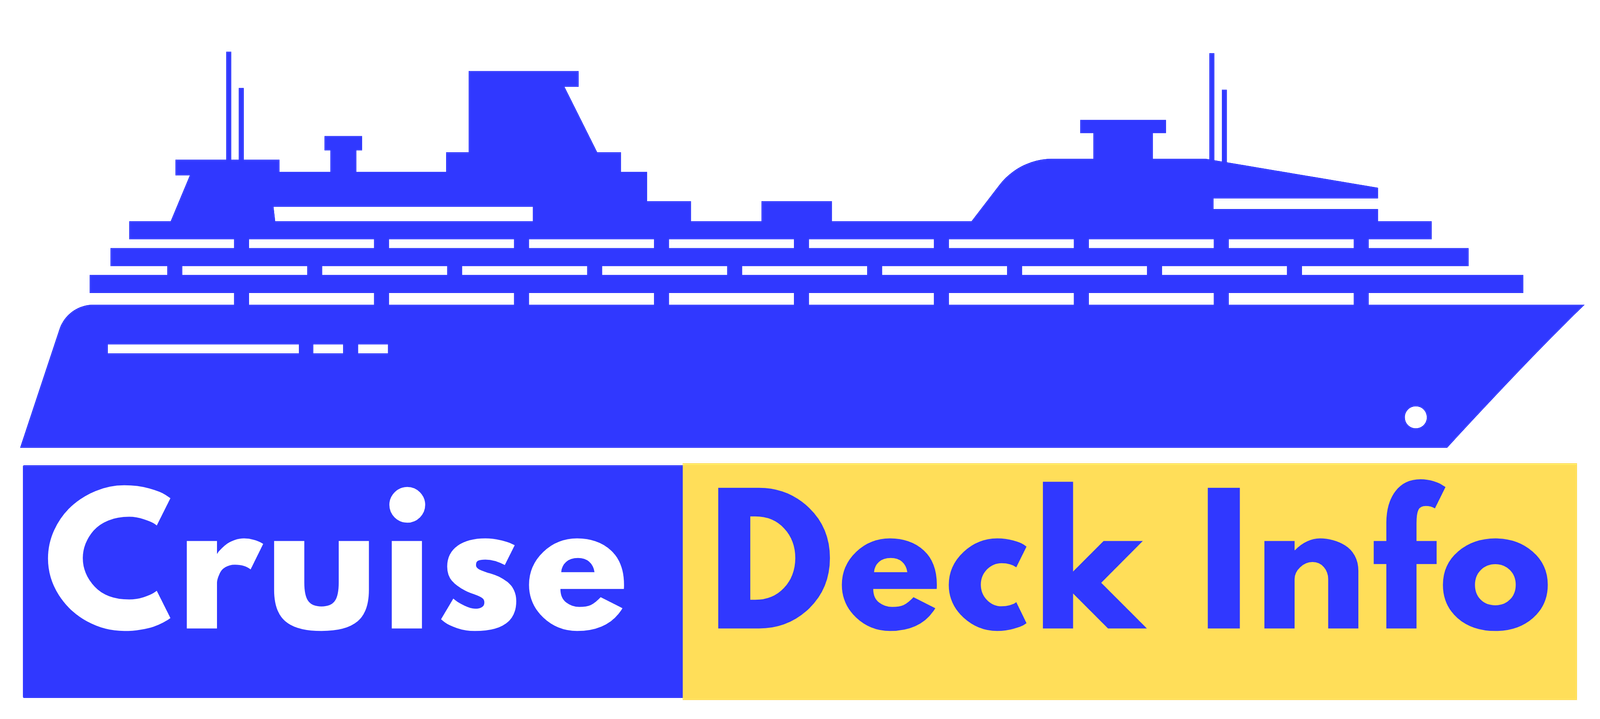 cruise deck plan